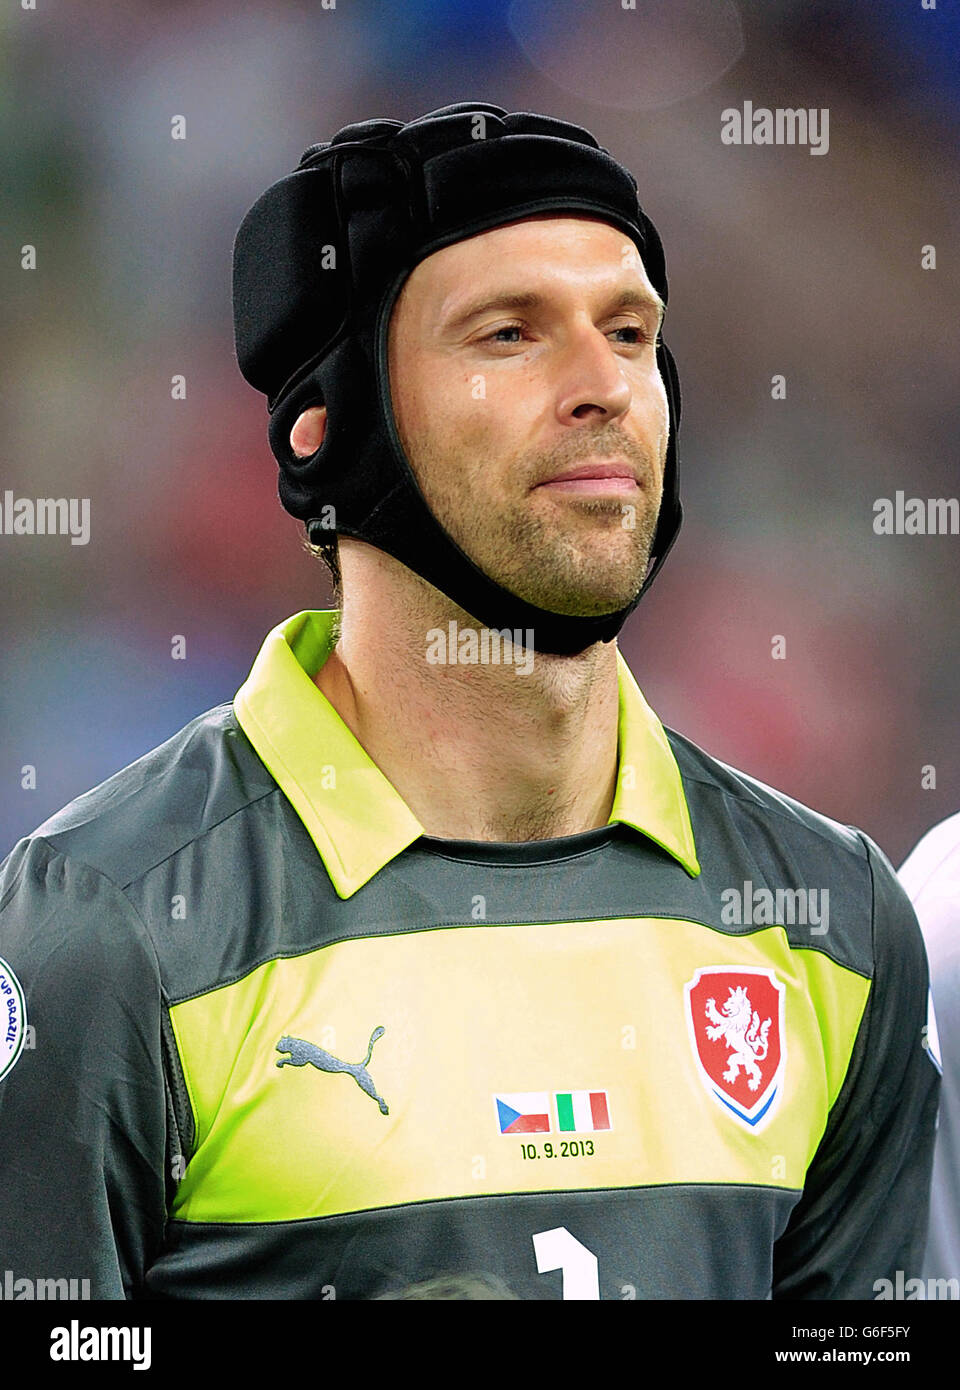 Soccer - 2014 FIFA World Cup - Qualifier - Group B - Italy v Czech Republic - Juventus Stadium. Goalkeeper Petr Cech, Czech Republic. Stock Photo